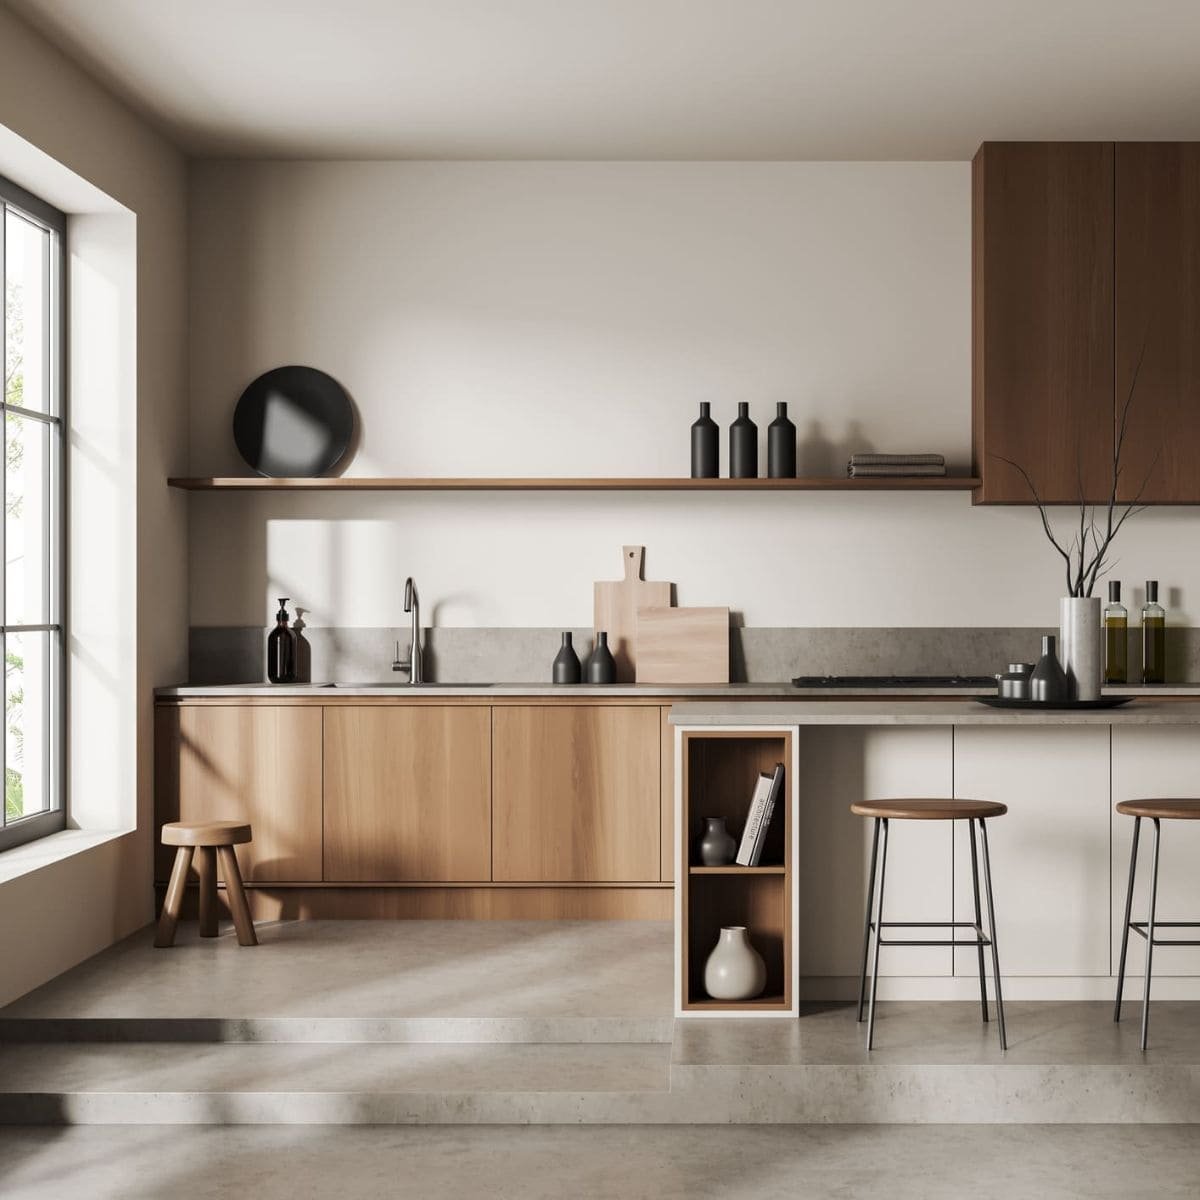 Kitchen | Modern Scandinavian style | Beige concrete and wooden kitchen